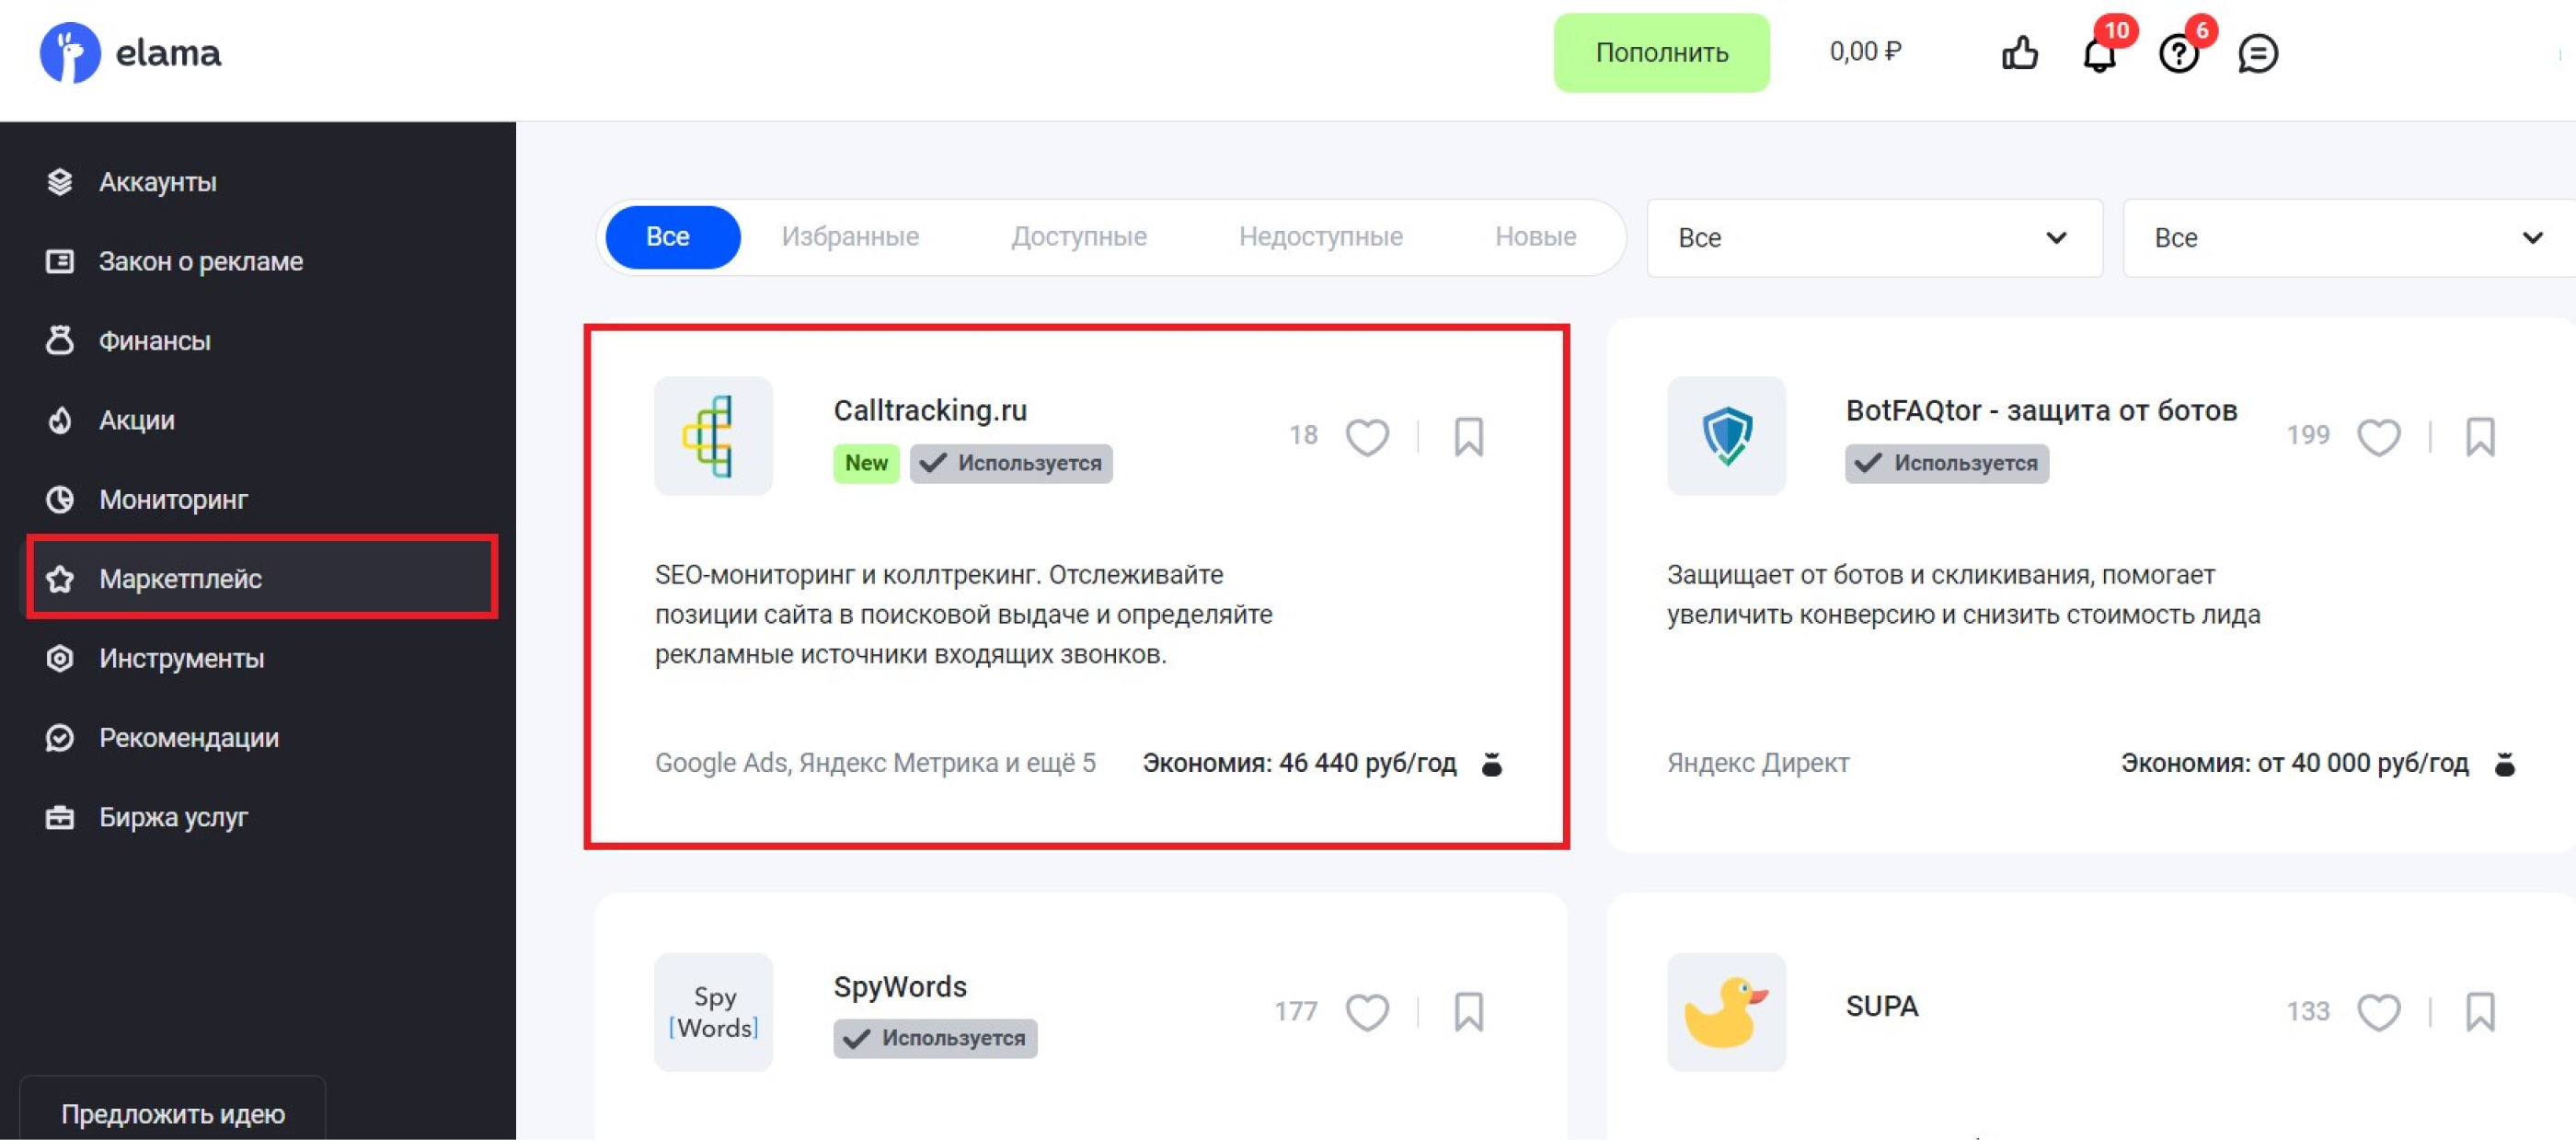 Calltracking.ru на маркетплейсе eLama